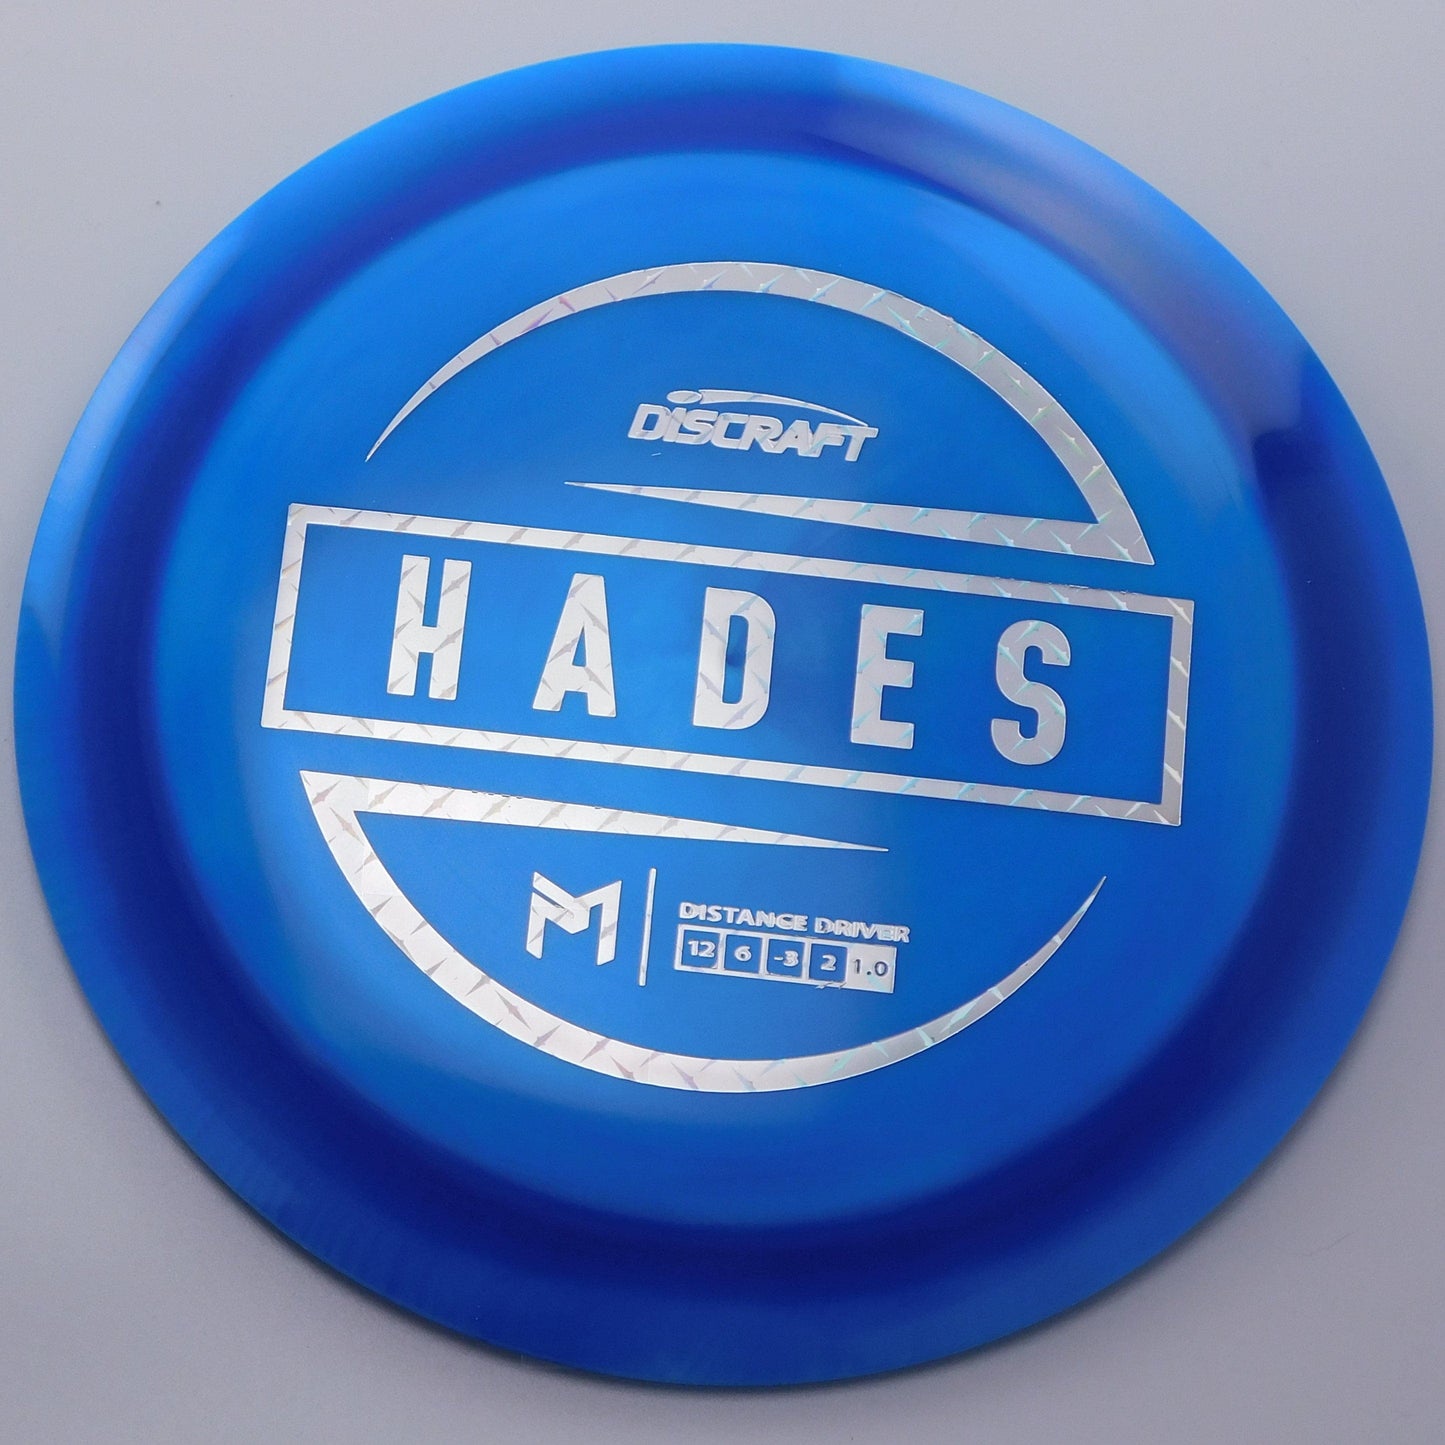 Discraft Hades - Paul McBeth - ESP Swirl 12│6│-3│2 175.3g - Blue+Blue - Discraft Hades - ESP Swirl - 100375